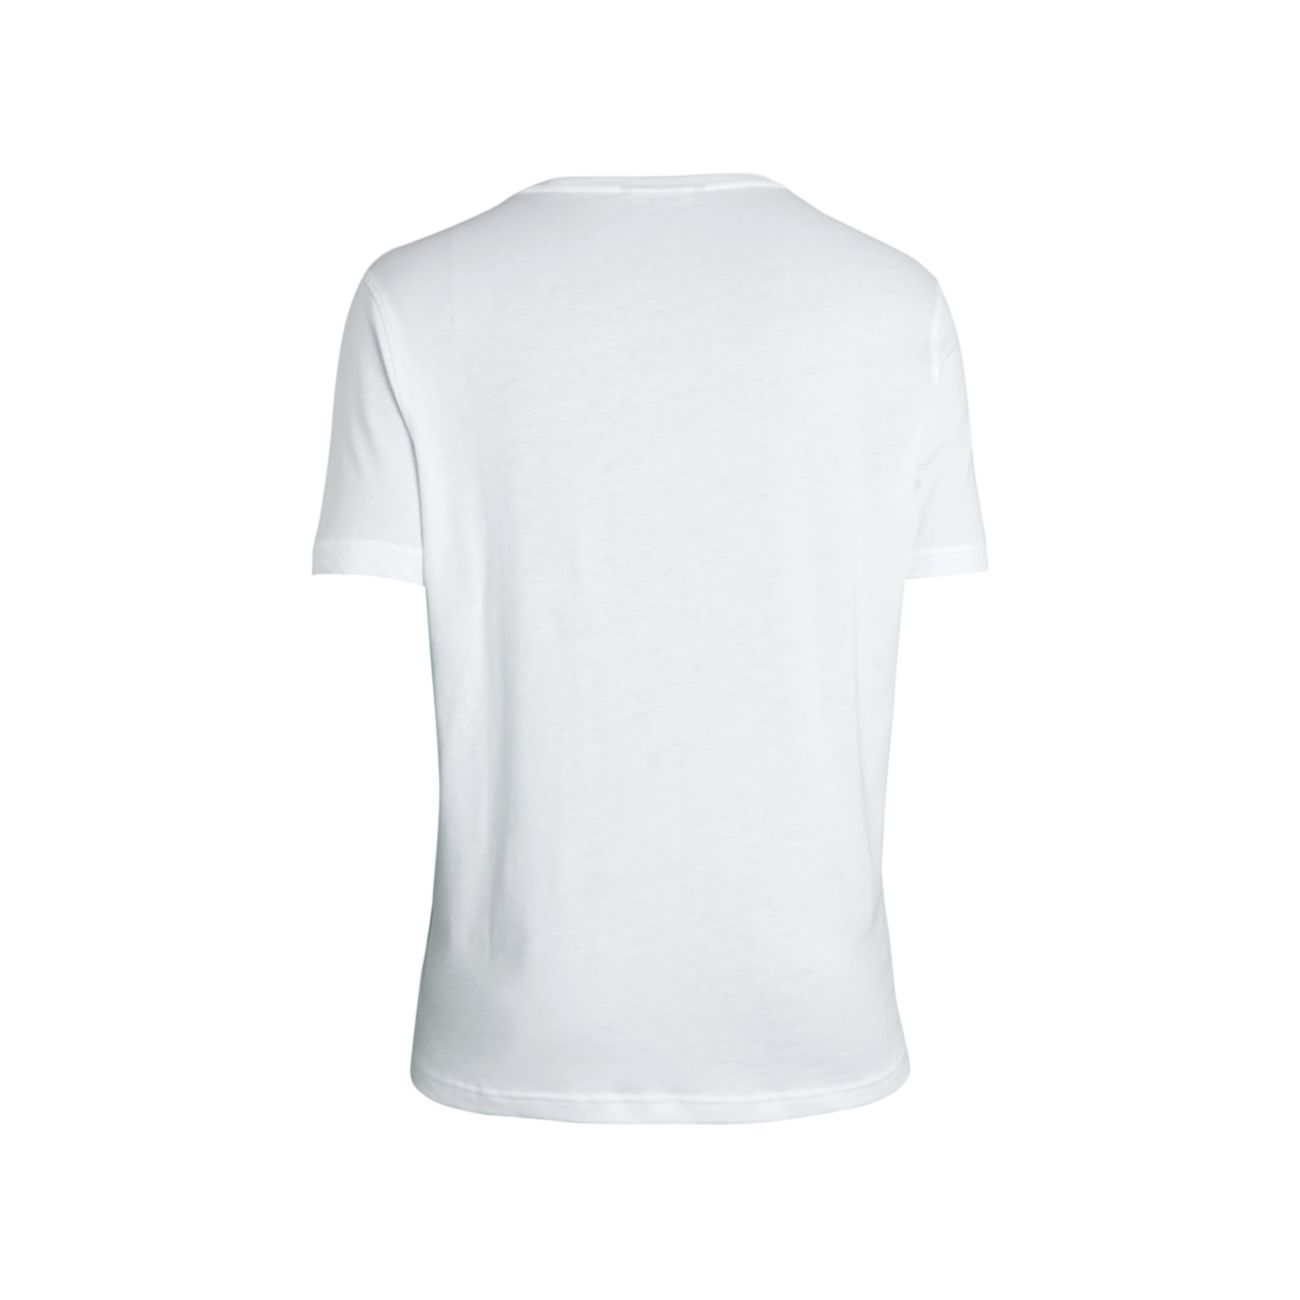 Хлопковая футболка с круглым вырезом Michael Kors